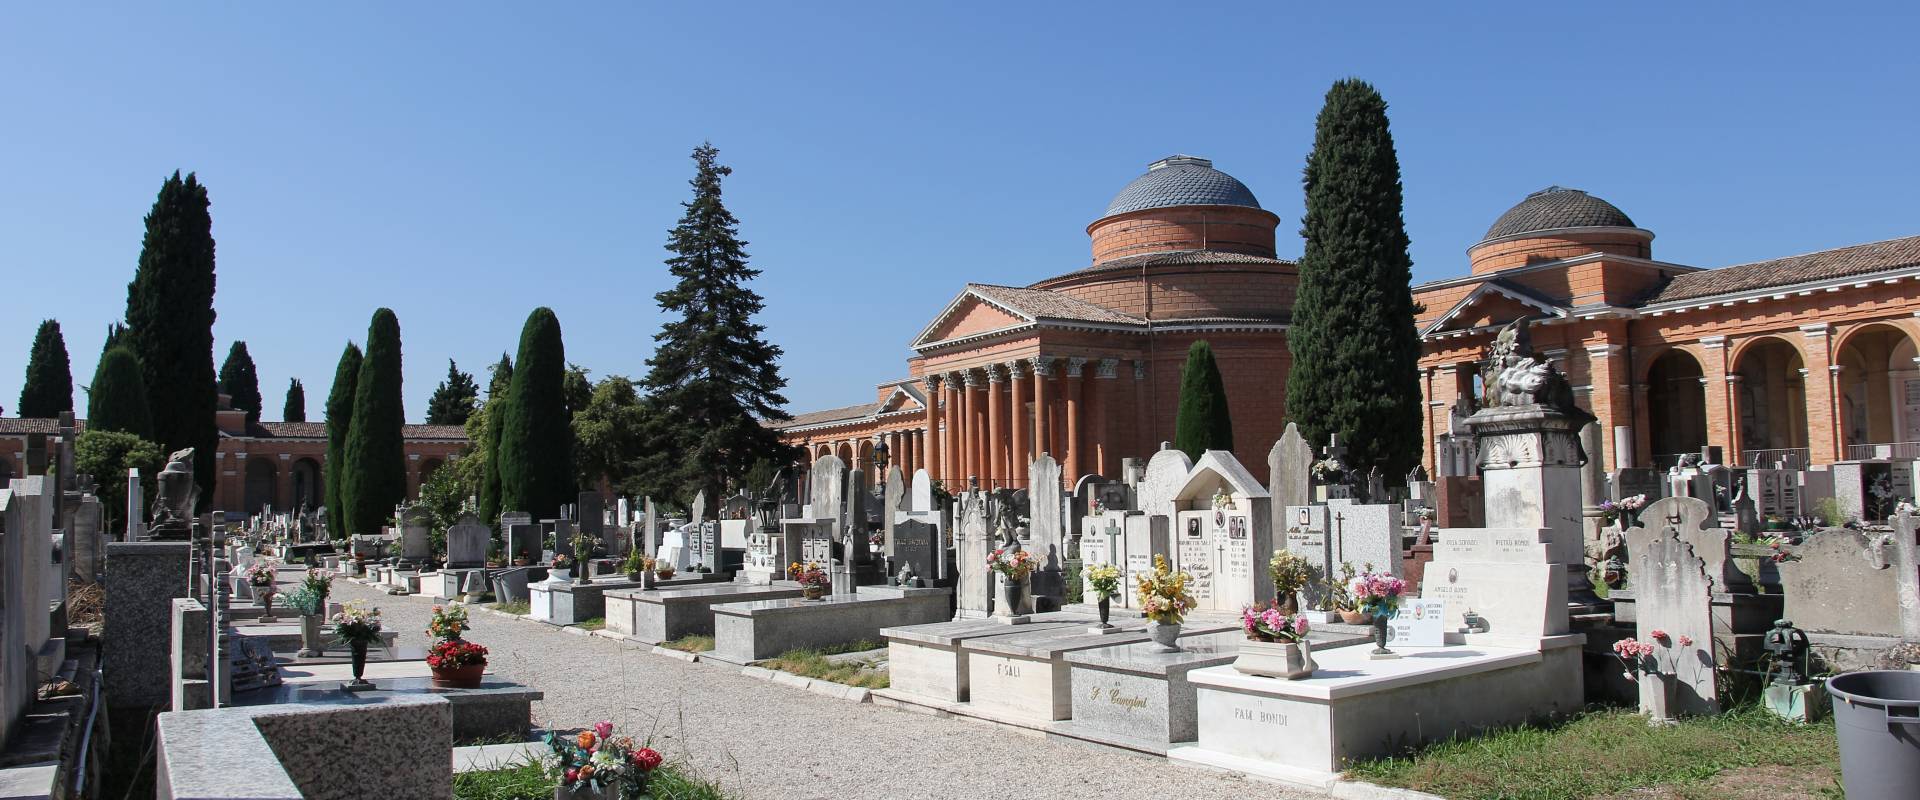 Forlì, cimitero monumentale (12) foto di Gianni Careddu